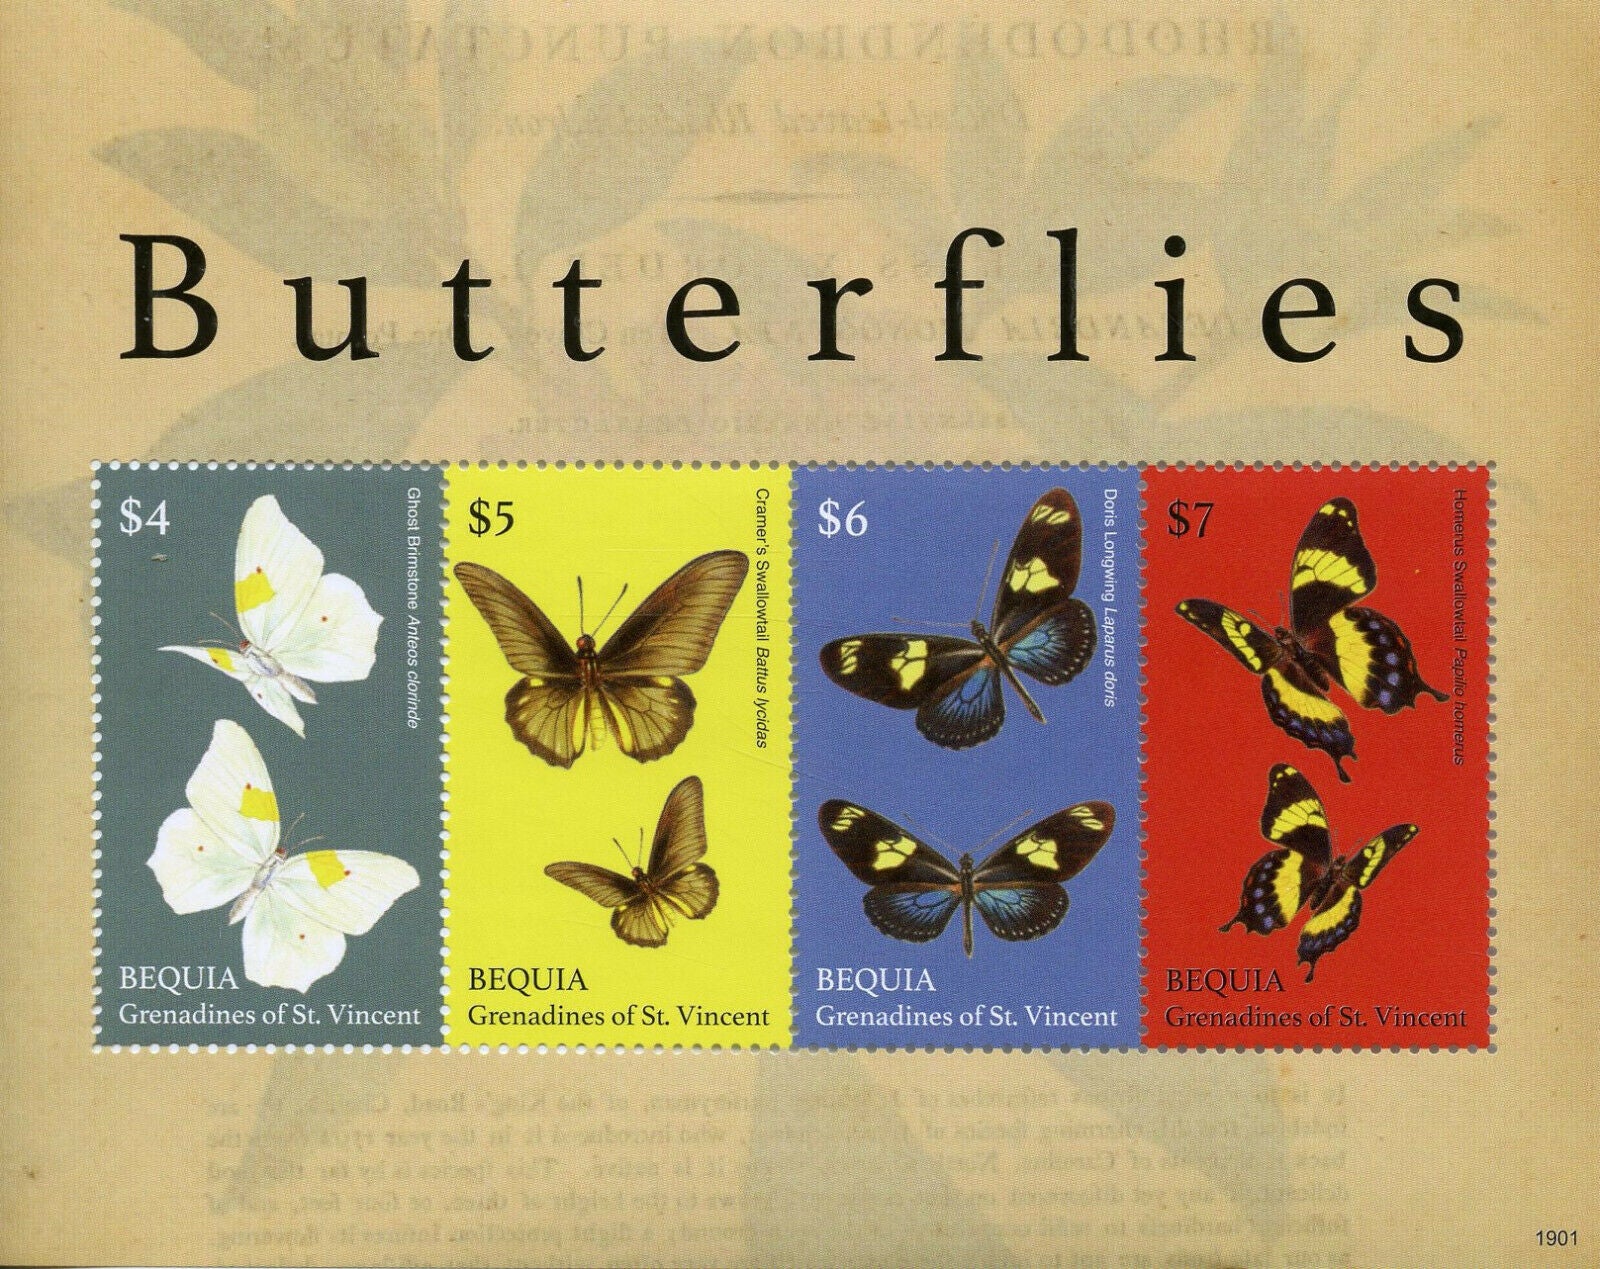 Bequia Gren St Vincent Butterflies Stamps 2019 MNH Swallowtail Butterfly 4v M/S